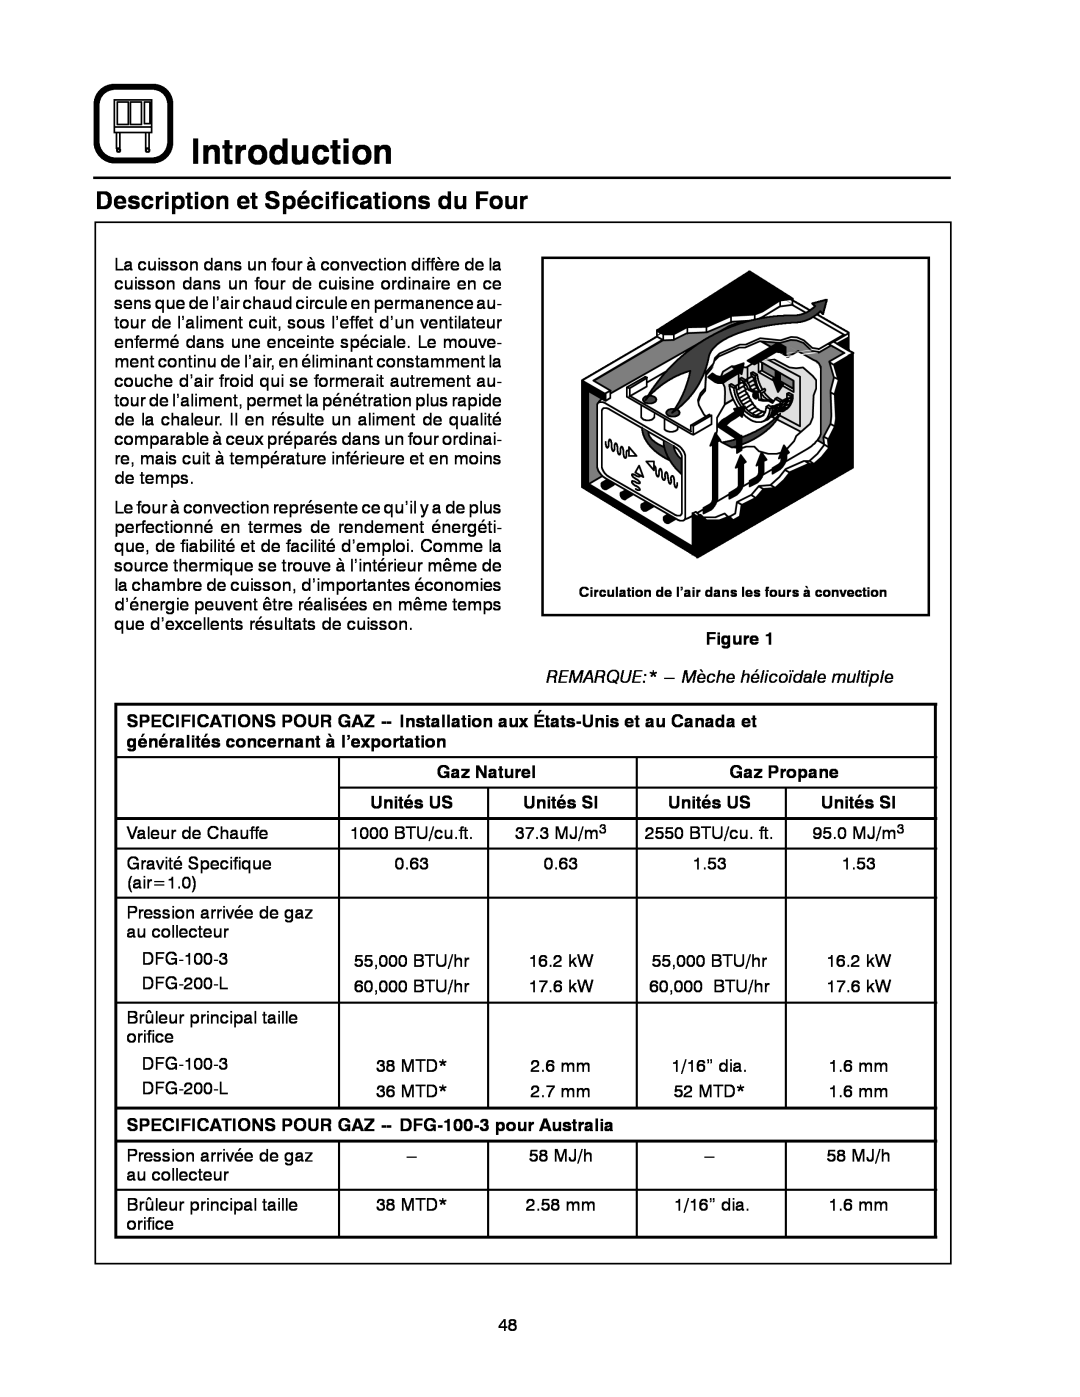 Blodgett DFG-200 manual Description et Spécifications du Four, Introduction, Gaz Naturel, Gaz Propane, Unités US, Unités SI 